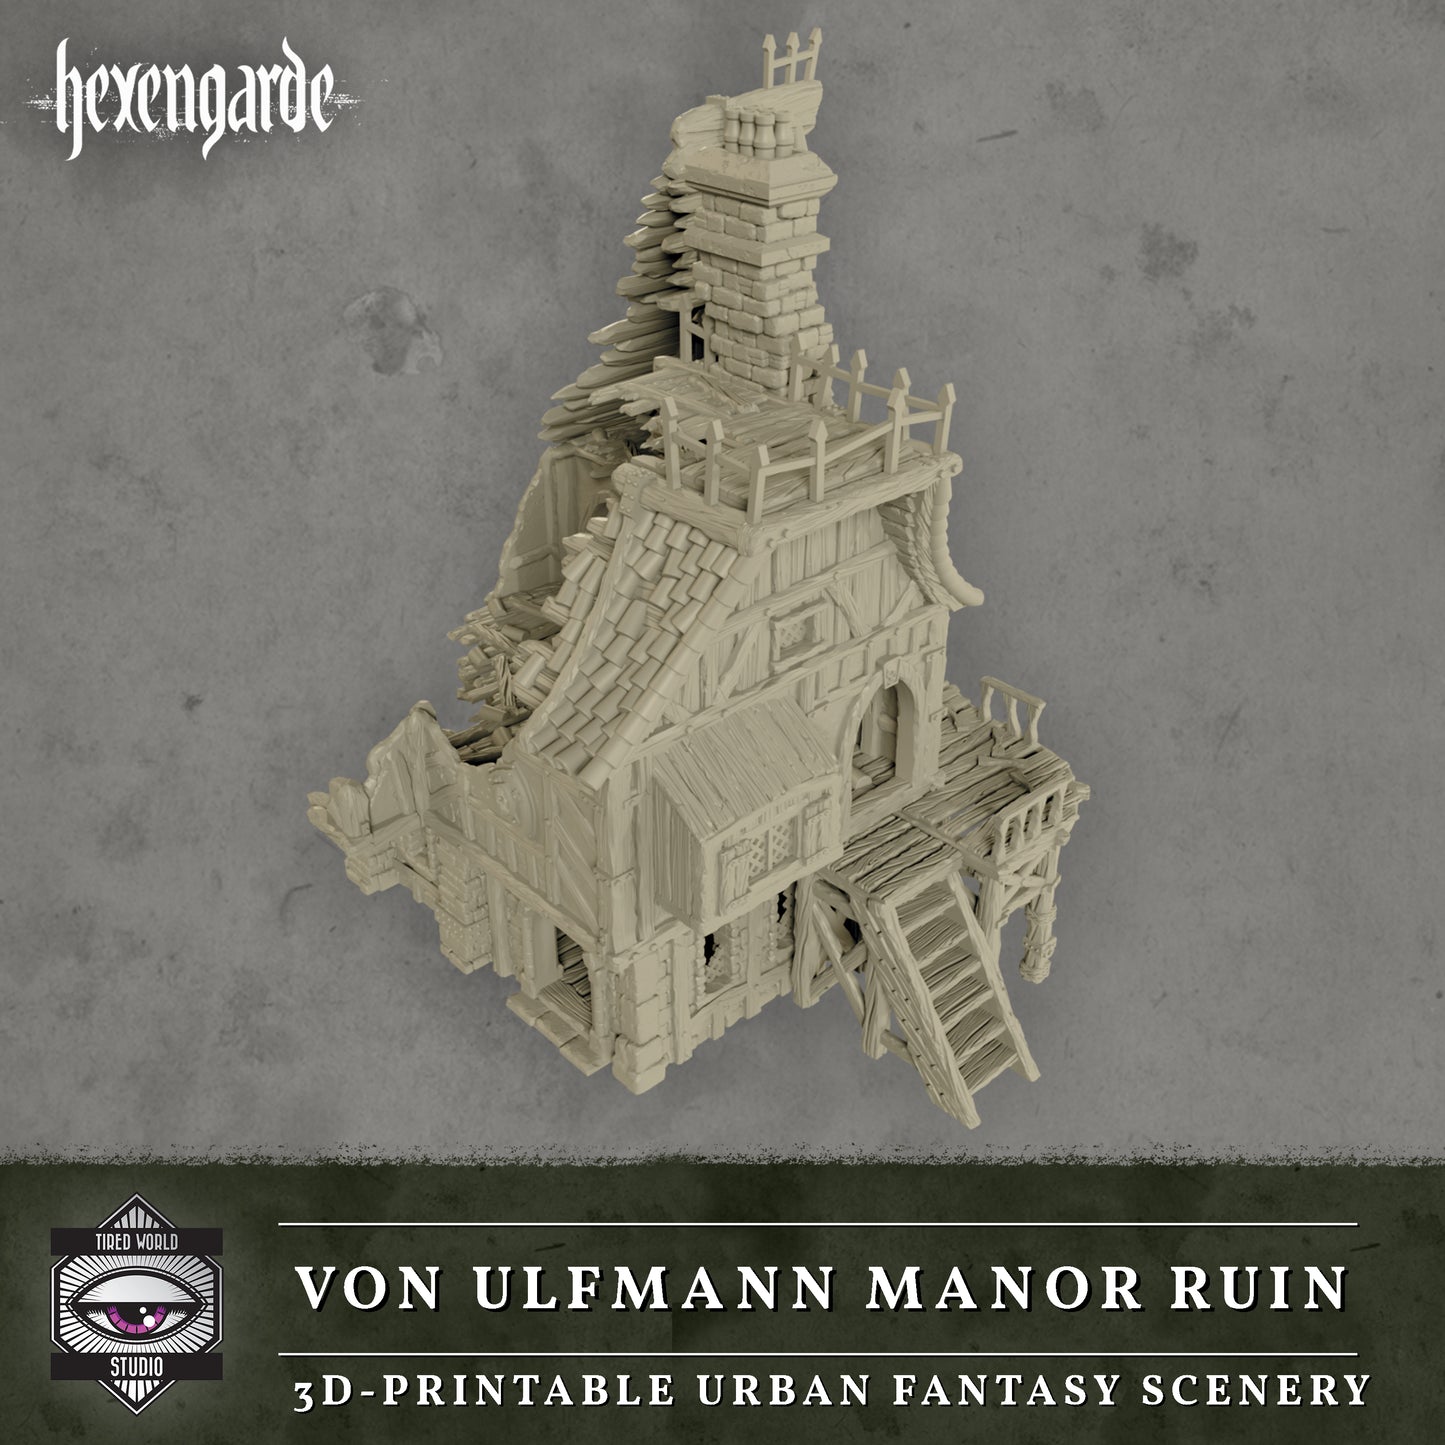 Von Ulfmann Mannor Ruin